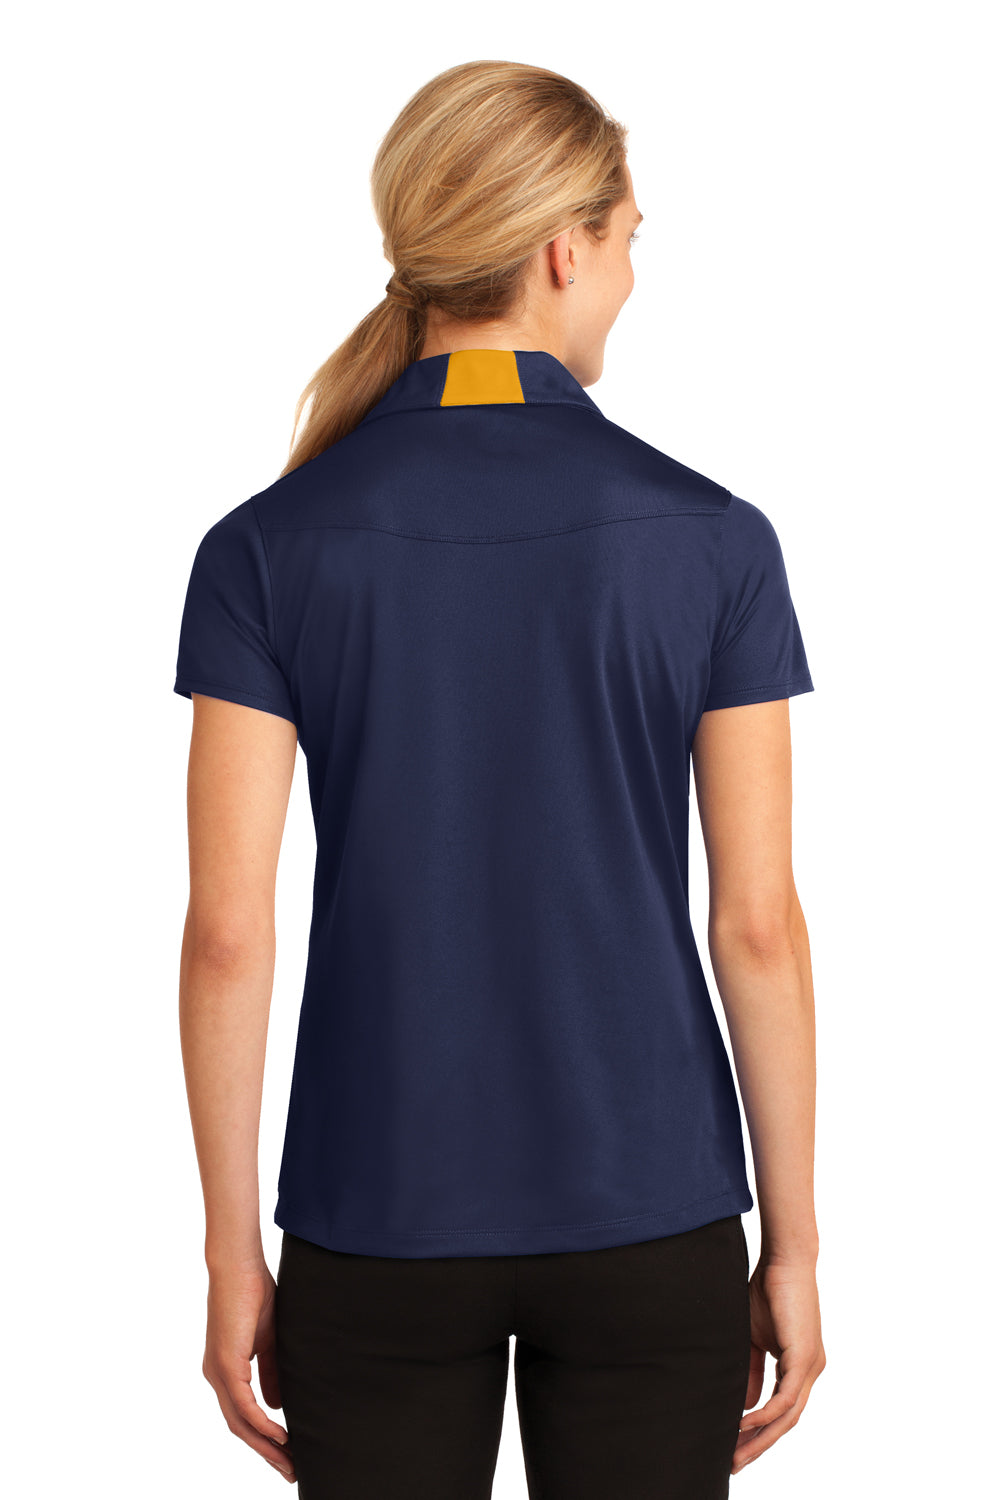 Sport-Tek LST655 Womens Sport-Wick Moisture Wicking Short Sleeve Polo Shirt Navy Blue/Gold Back